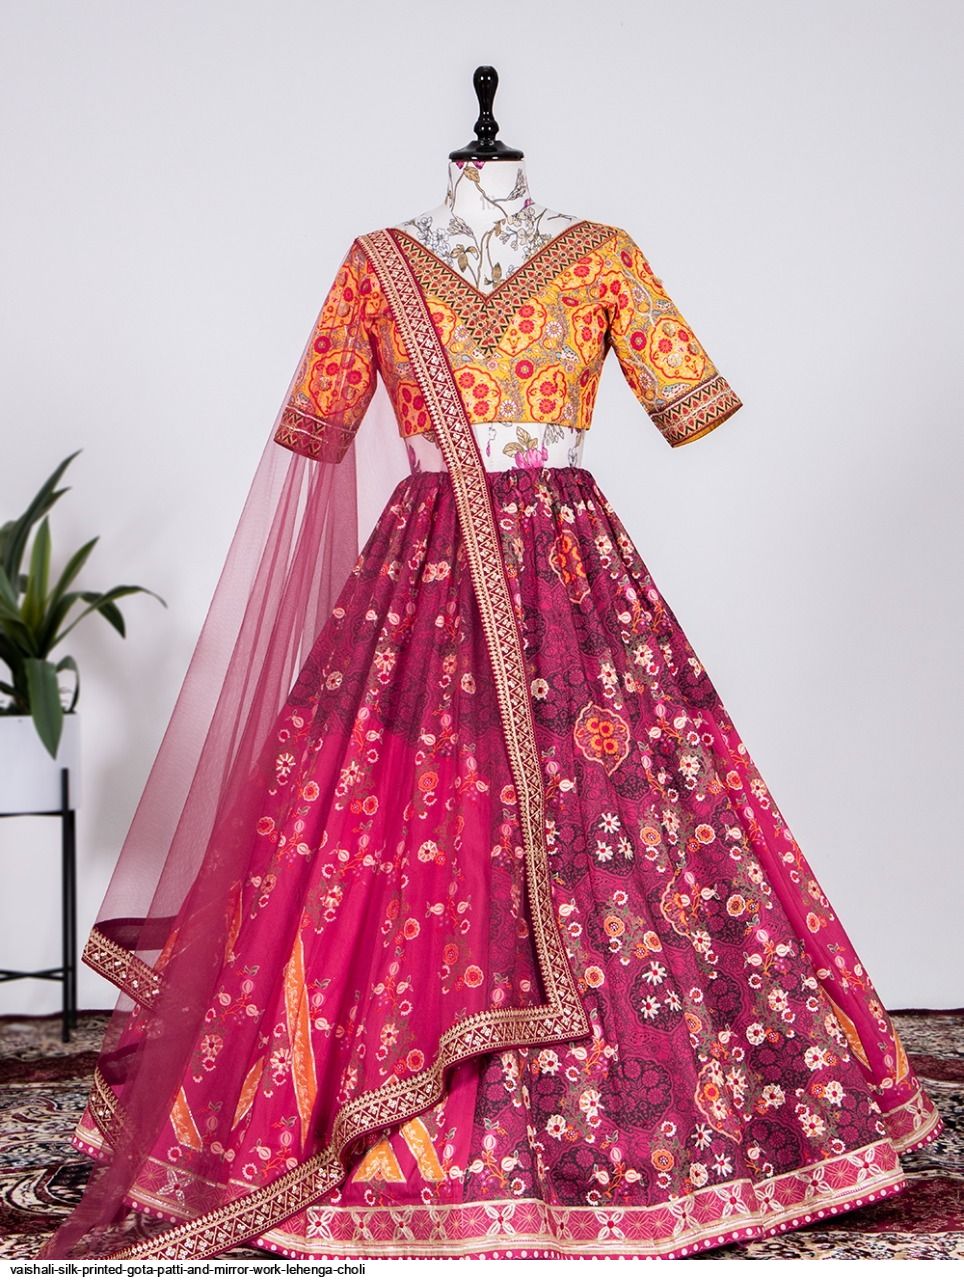 35 designer labels that offer gota patti lehengas, kurtas, saris and more |  Vogue India